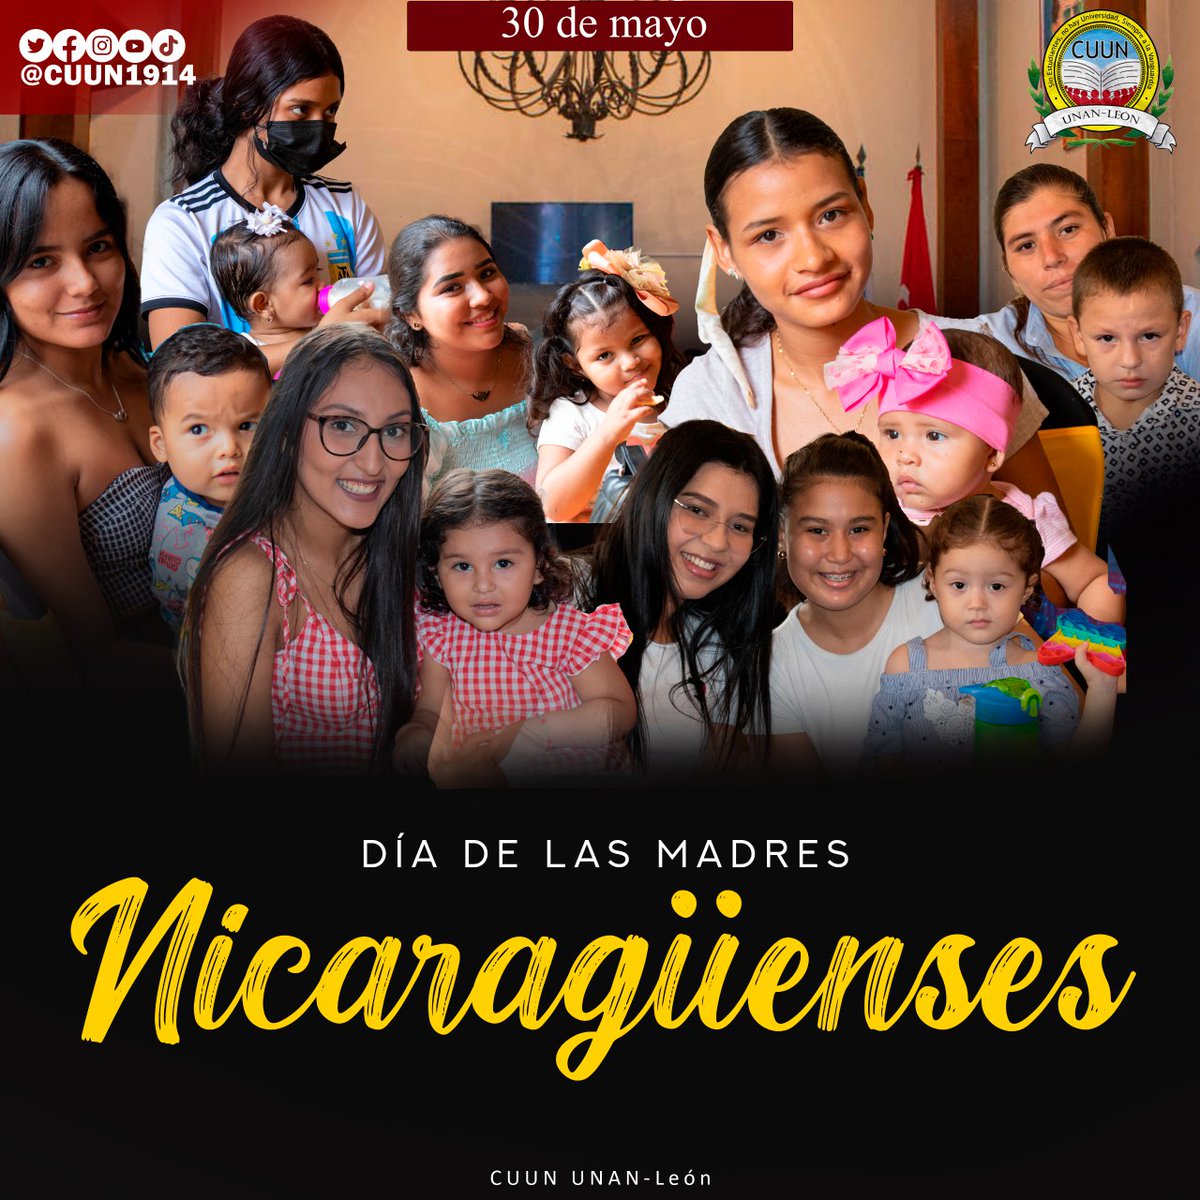 #30DeMayo || Felicitamos en su día a nuestras madrecitas nicaragüenses.

#MadresGranAmor 
#CUUN1914